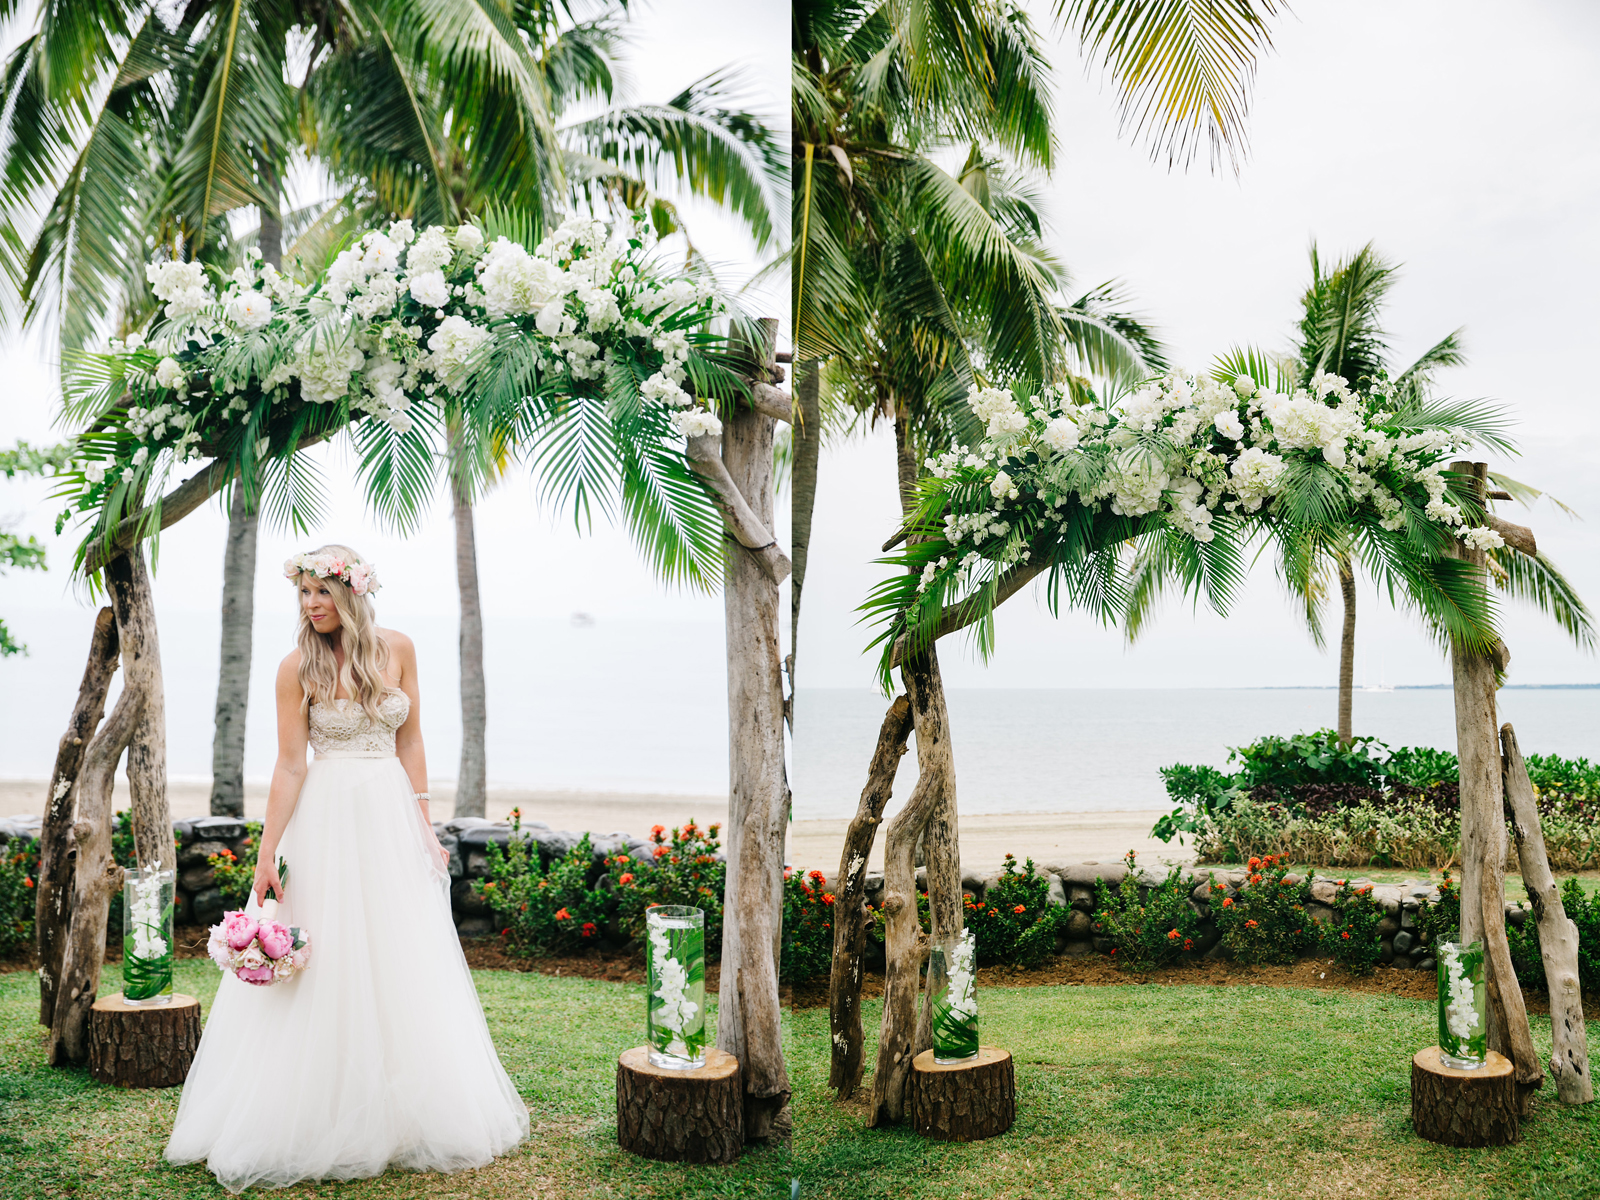 cổng đám cưới đẹp từ lá dừa và cọ